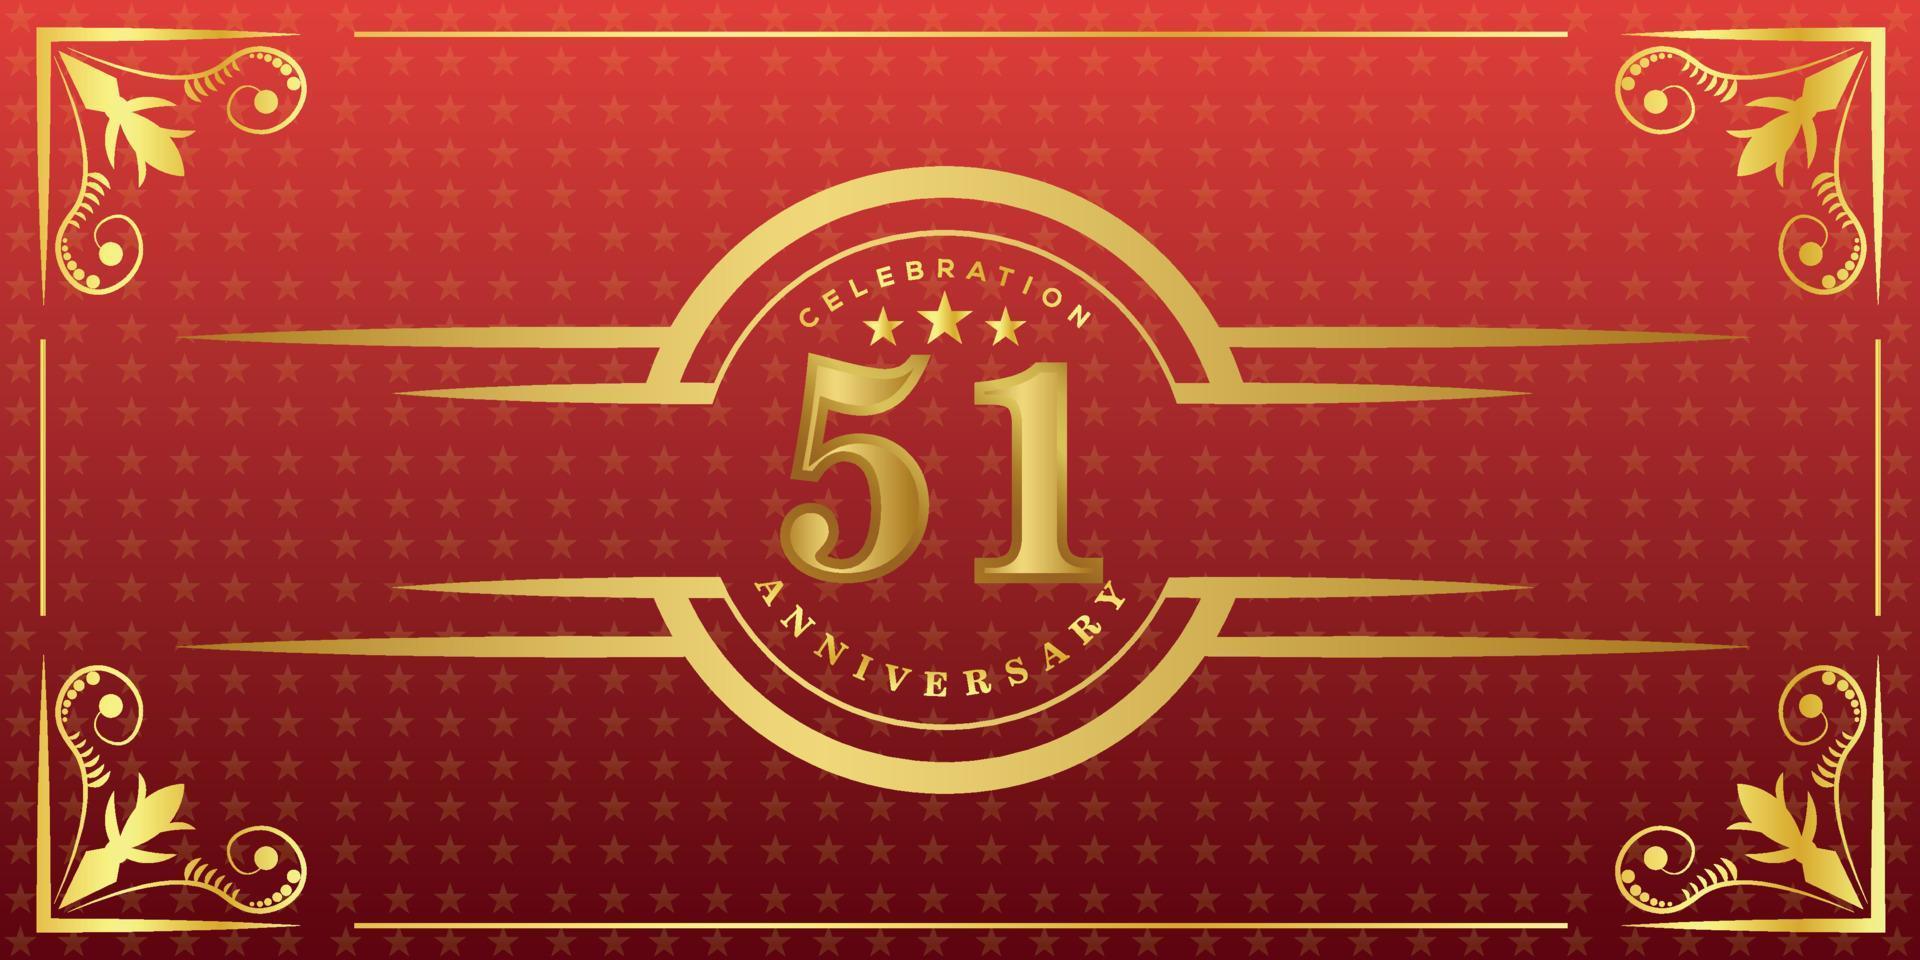 Logo du 51e anniversaire avec anneau doré, confettis et bordure dorée isolés sur fond rouge élégant, éclat, création vectorielle pour carte de voeux et carte d'invitation vecteur